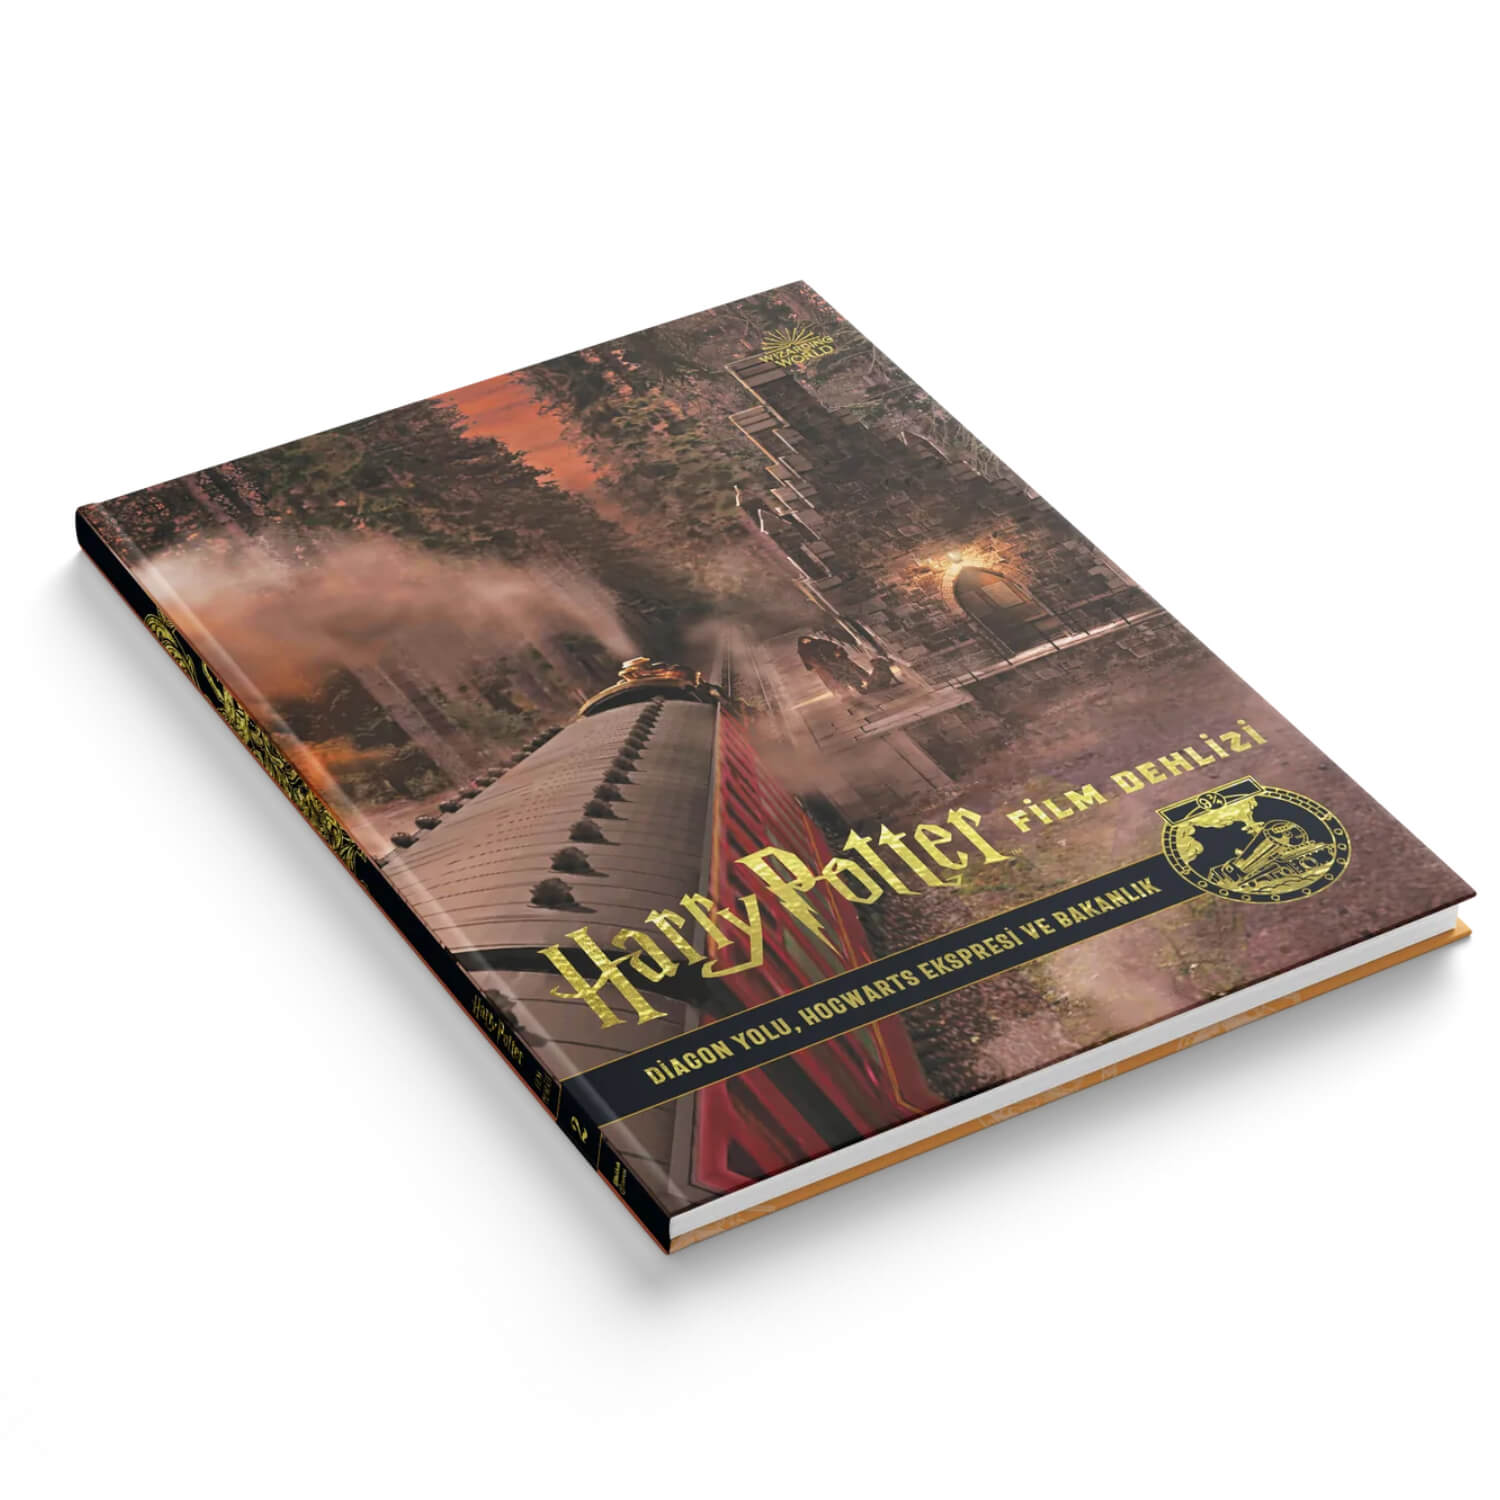 Film Dehlizi Kitap 2: Diagon Yolu, Hogwarts Ekspresi ve Sihir Bakanlığı (Ciltli)